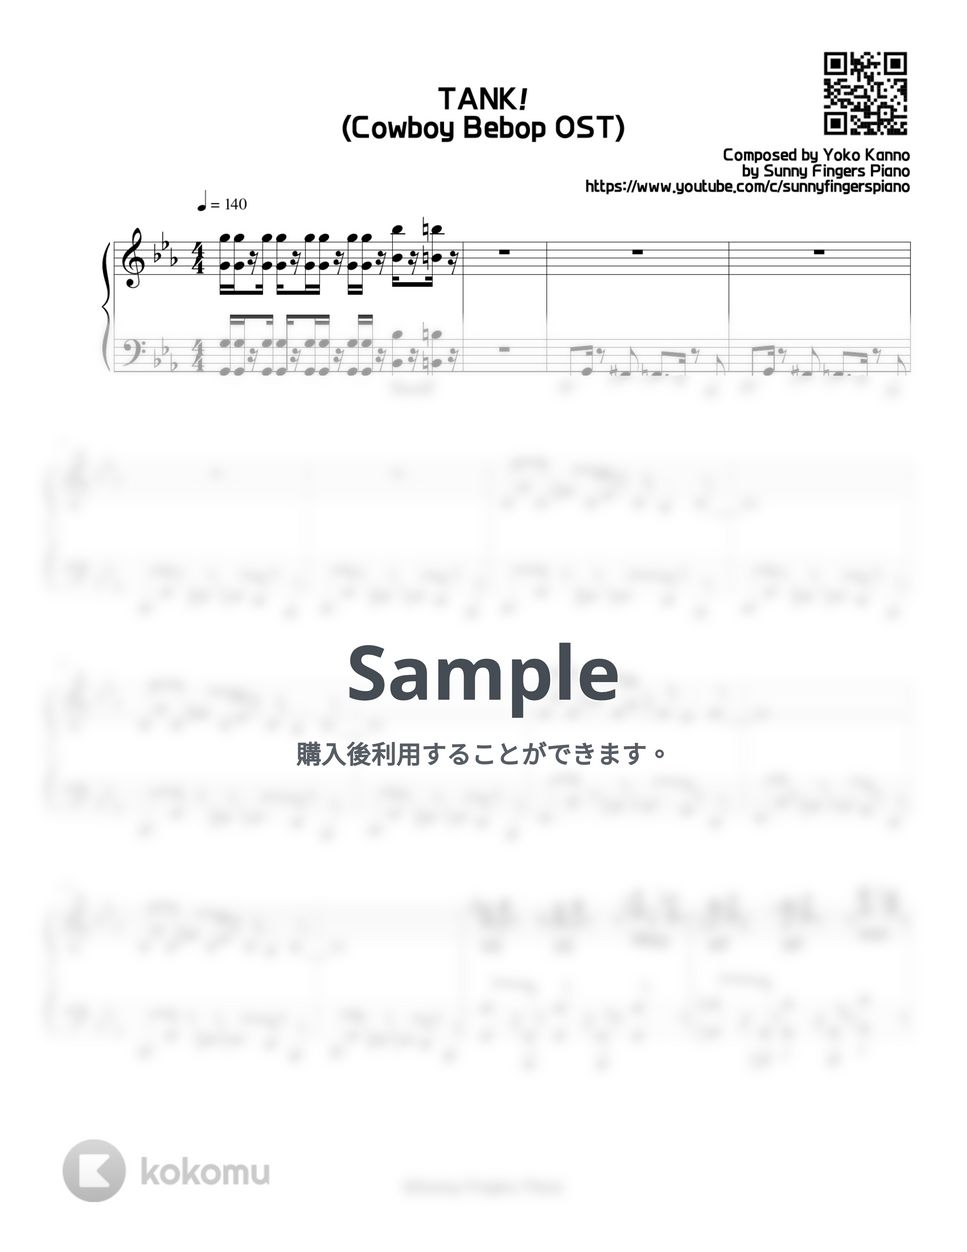 カウボーイ・ビバップ OST - TANK! (Original) by Sunny Fingers Piano